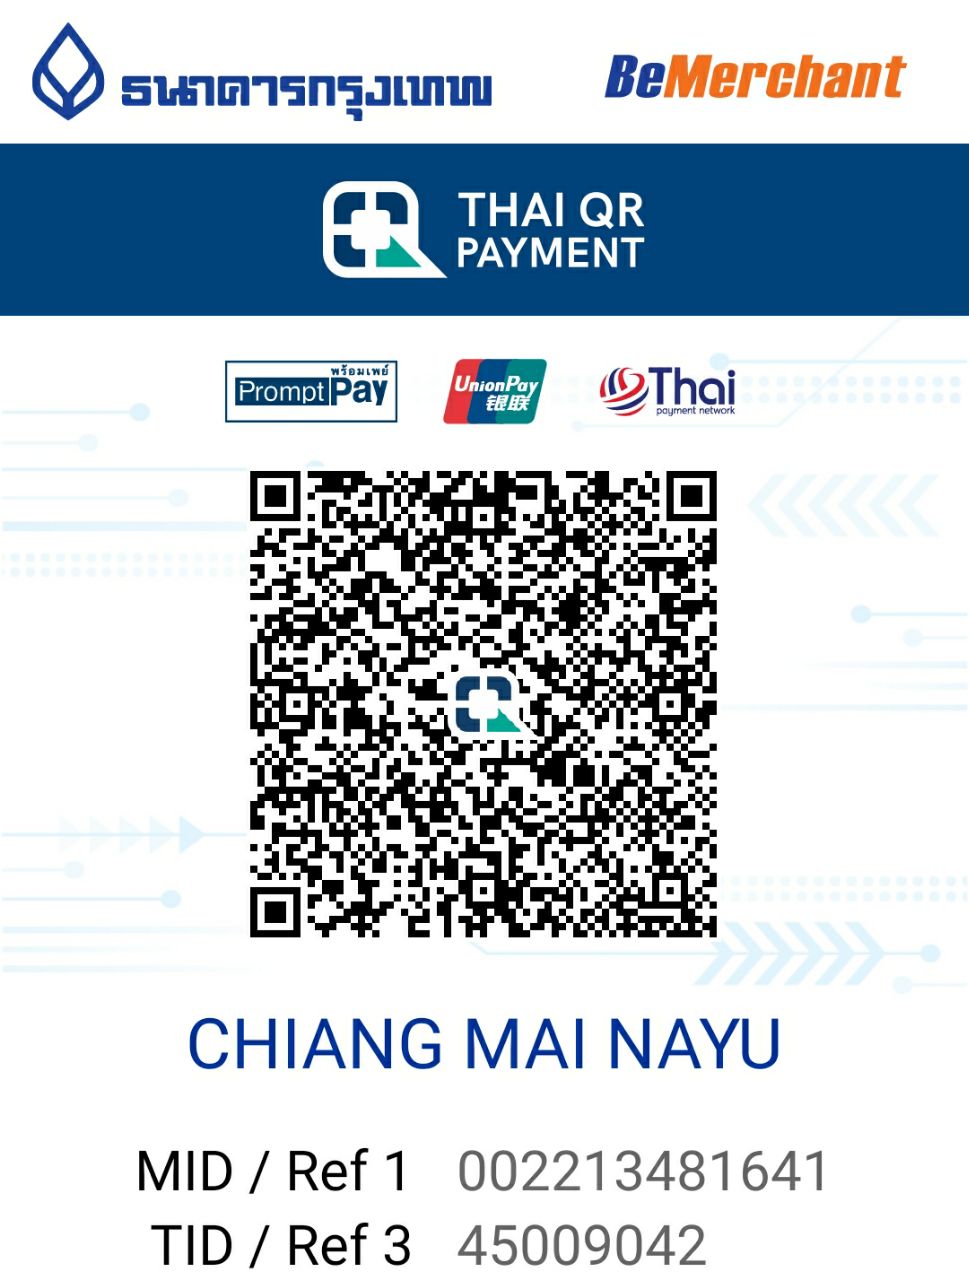 Chiang Mai Nayu QR Code Bangkok Bank